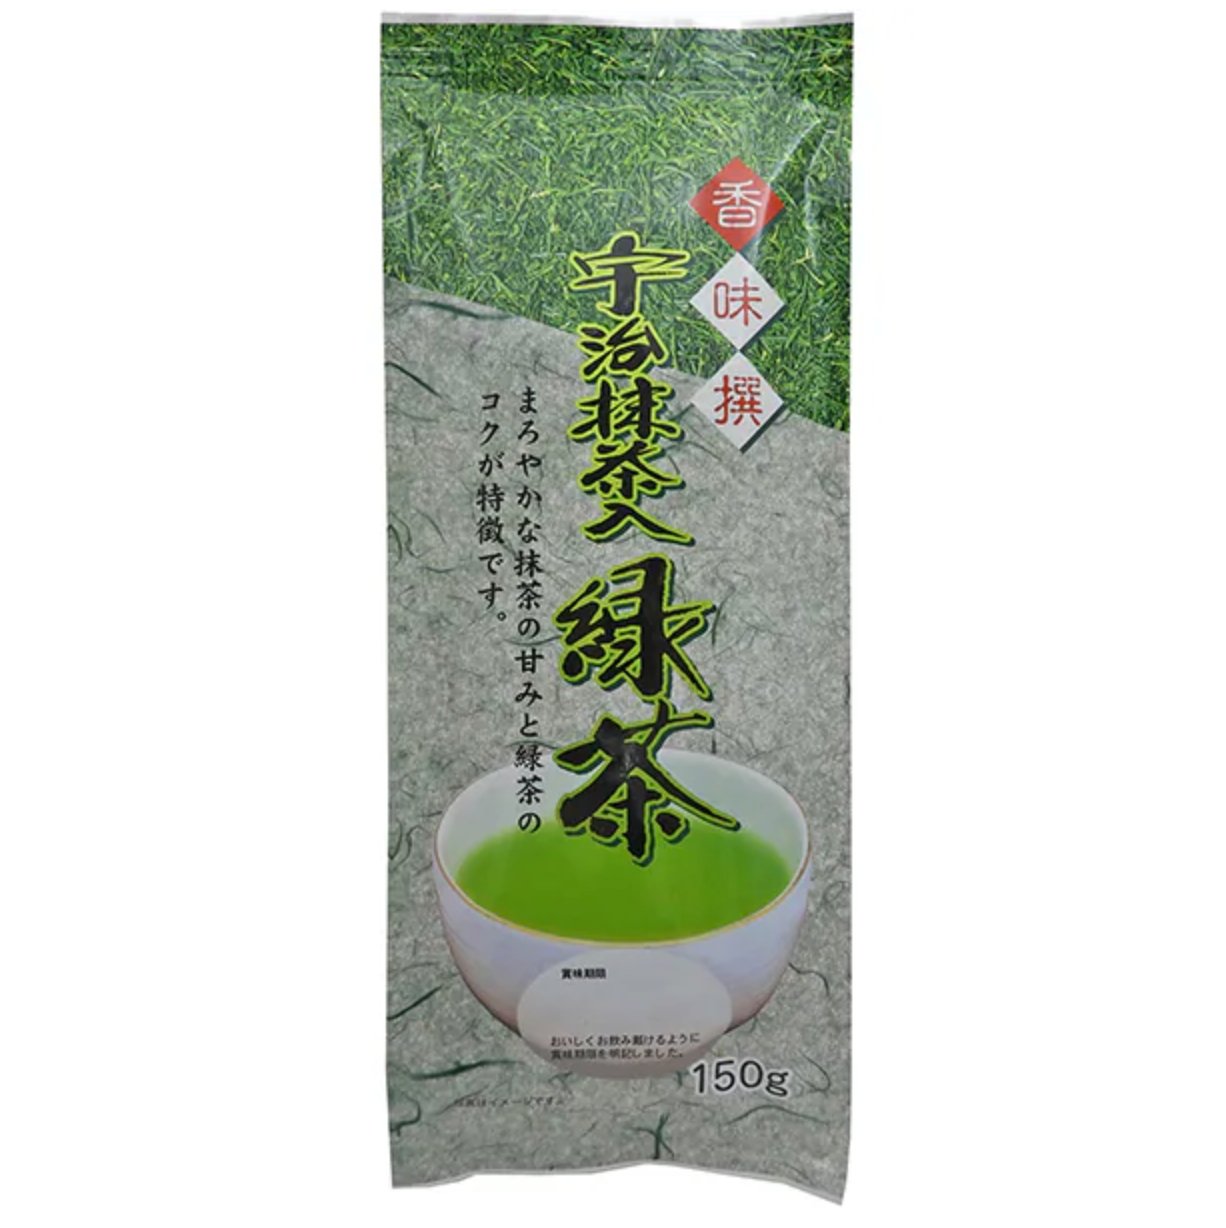 Oigawa Tea Garden Flavor Collection Uji Matcha Green Tea 150g - NihonMura